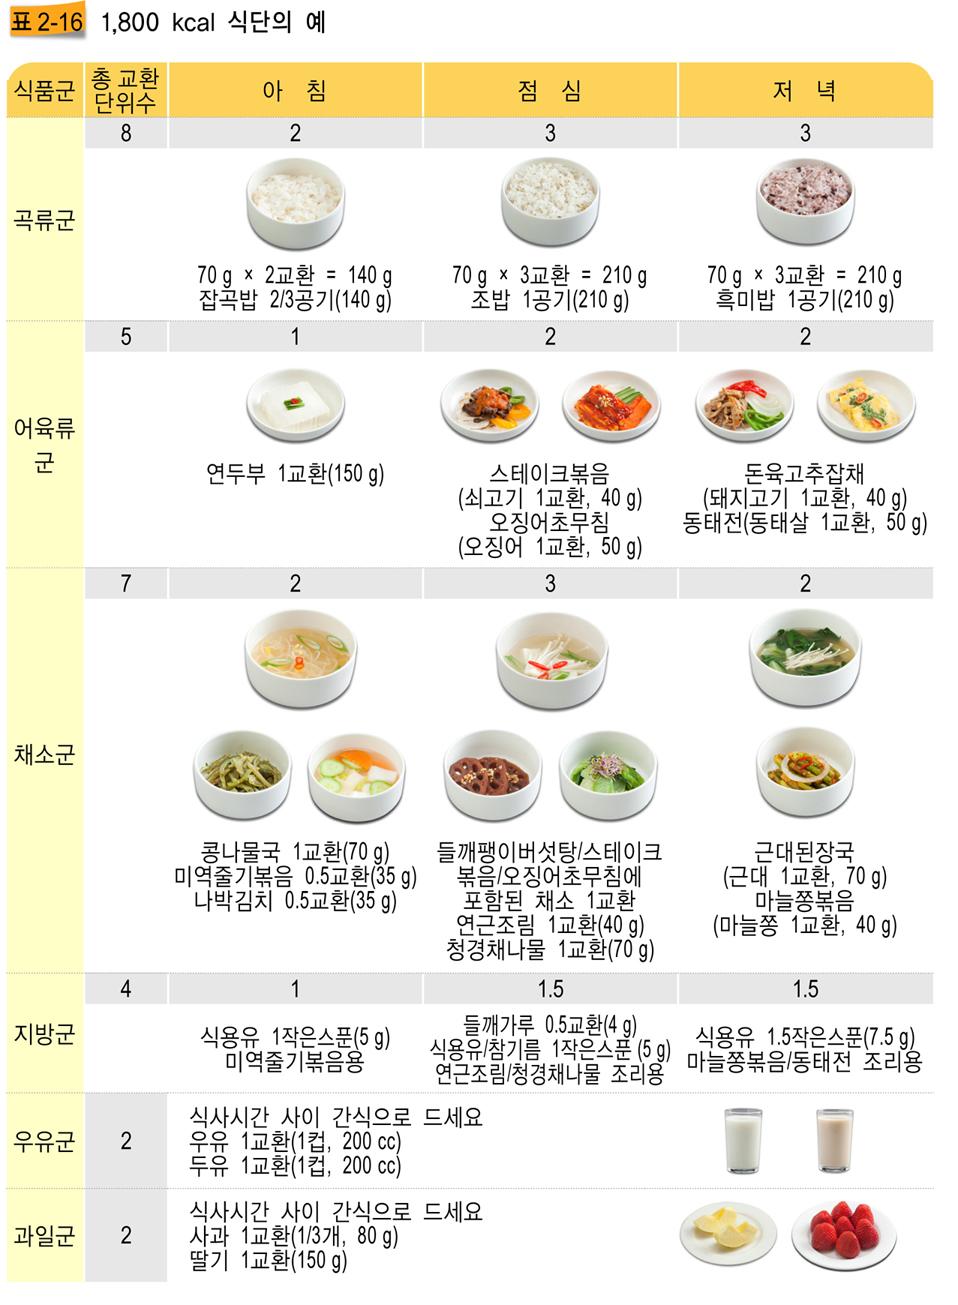 04 임상영양요법부록 (2) 처방열량에따른식사계획및식단 1800